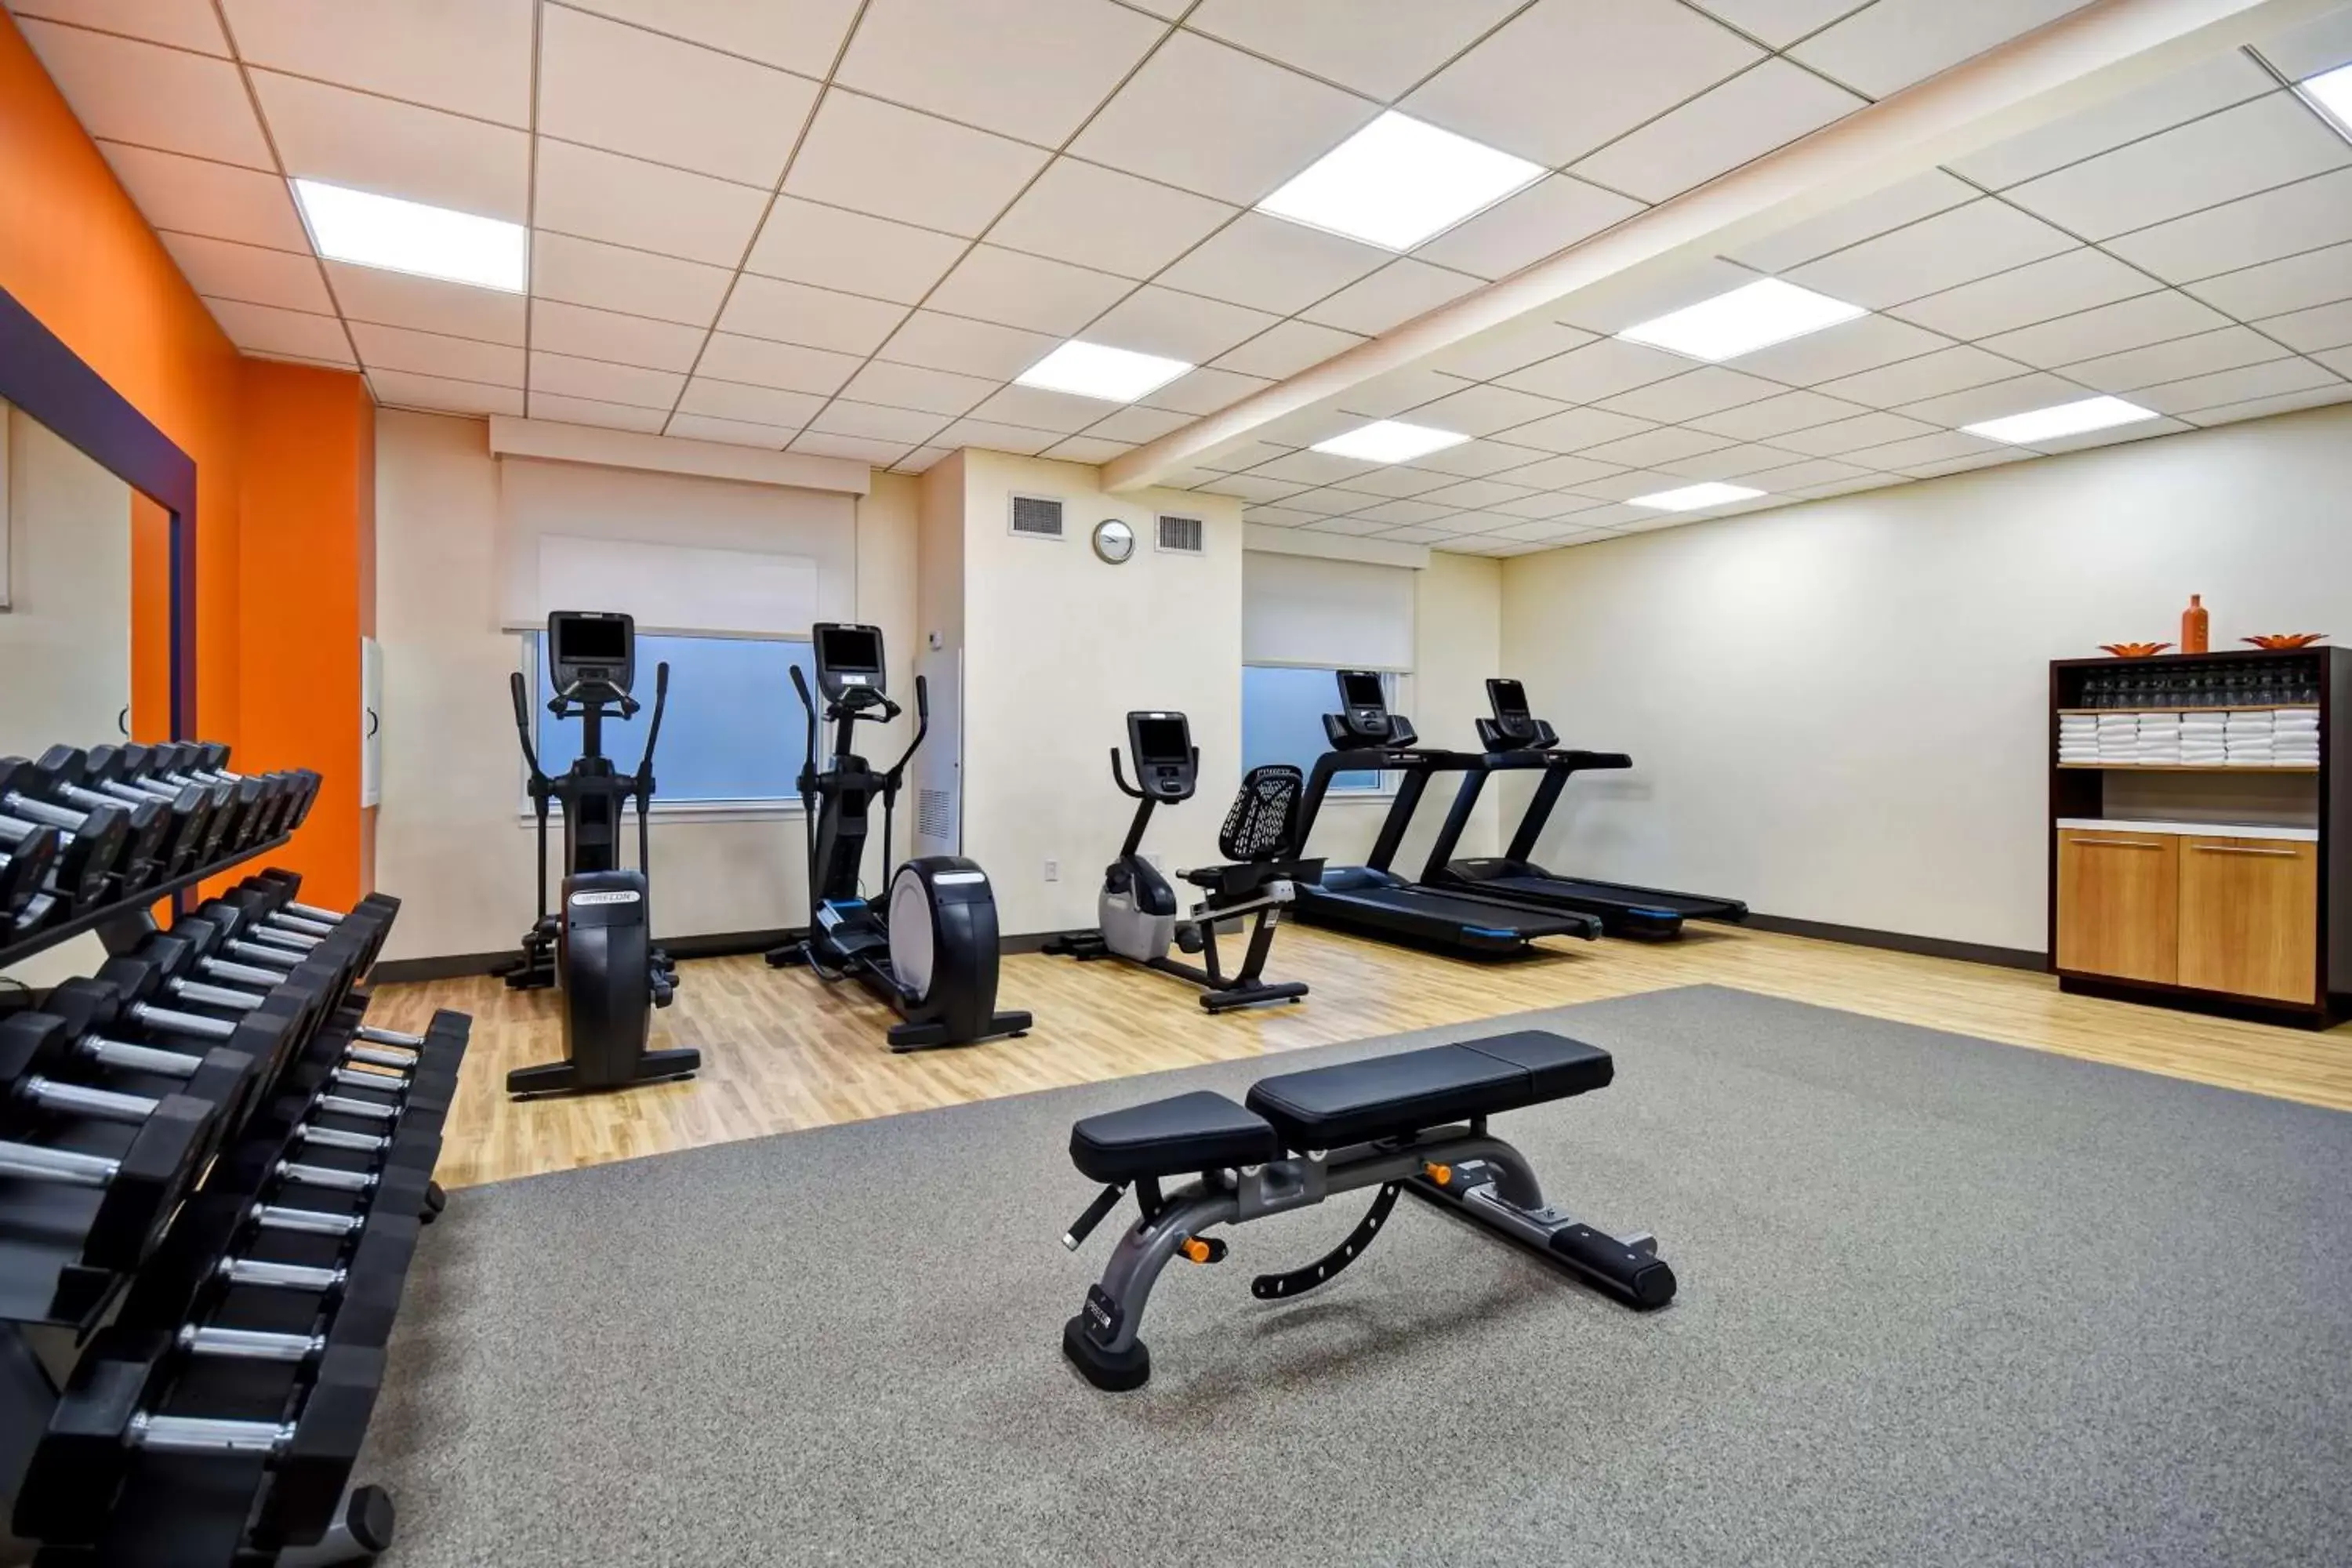 Fitness centre/facilities, Fitness Center/Facilities in Hampton Inn NY-JFK